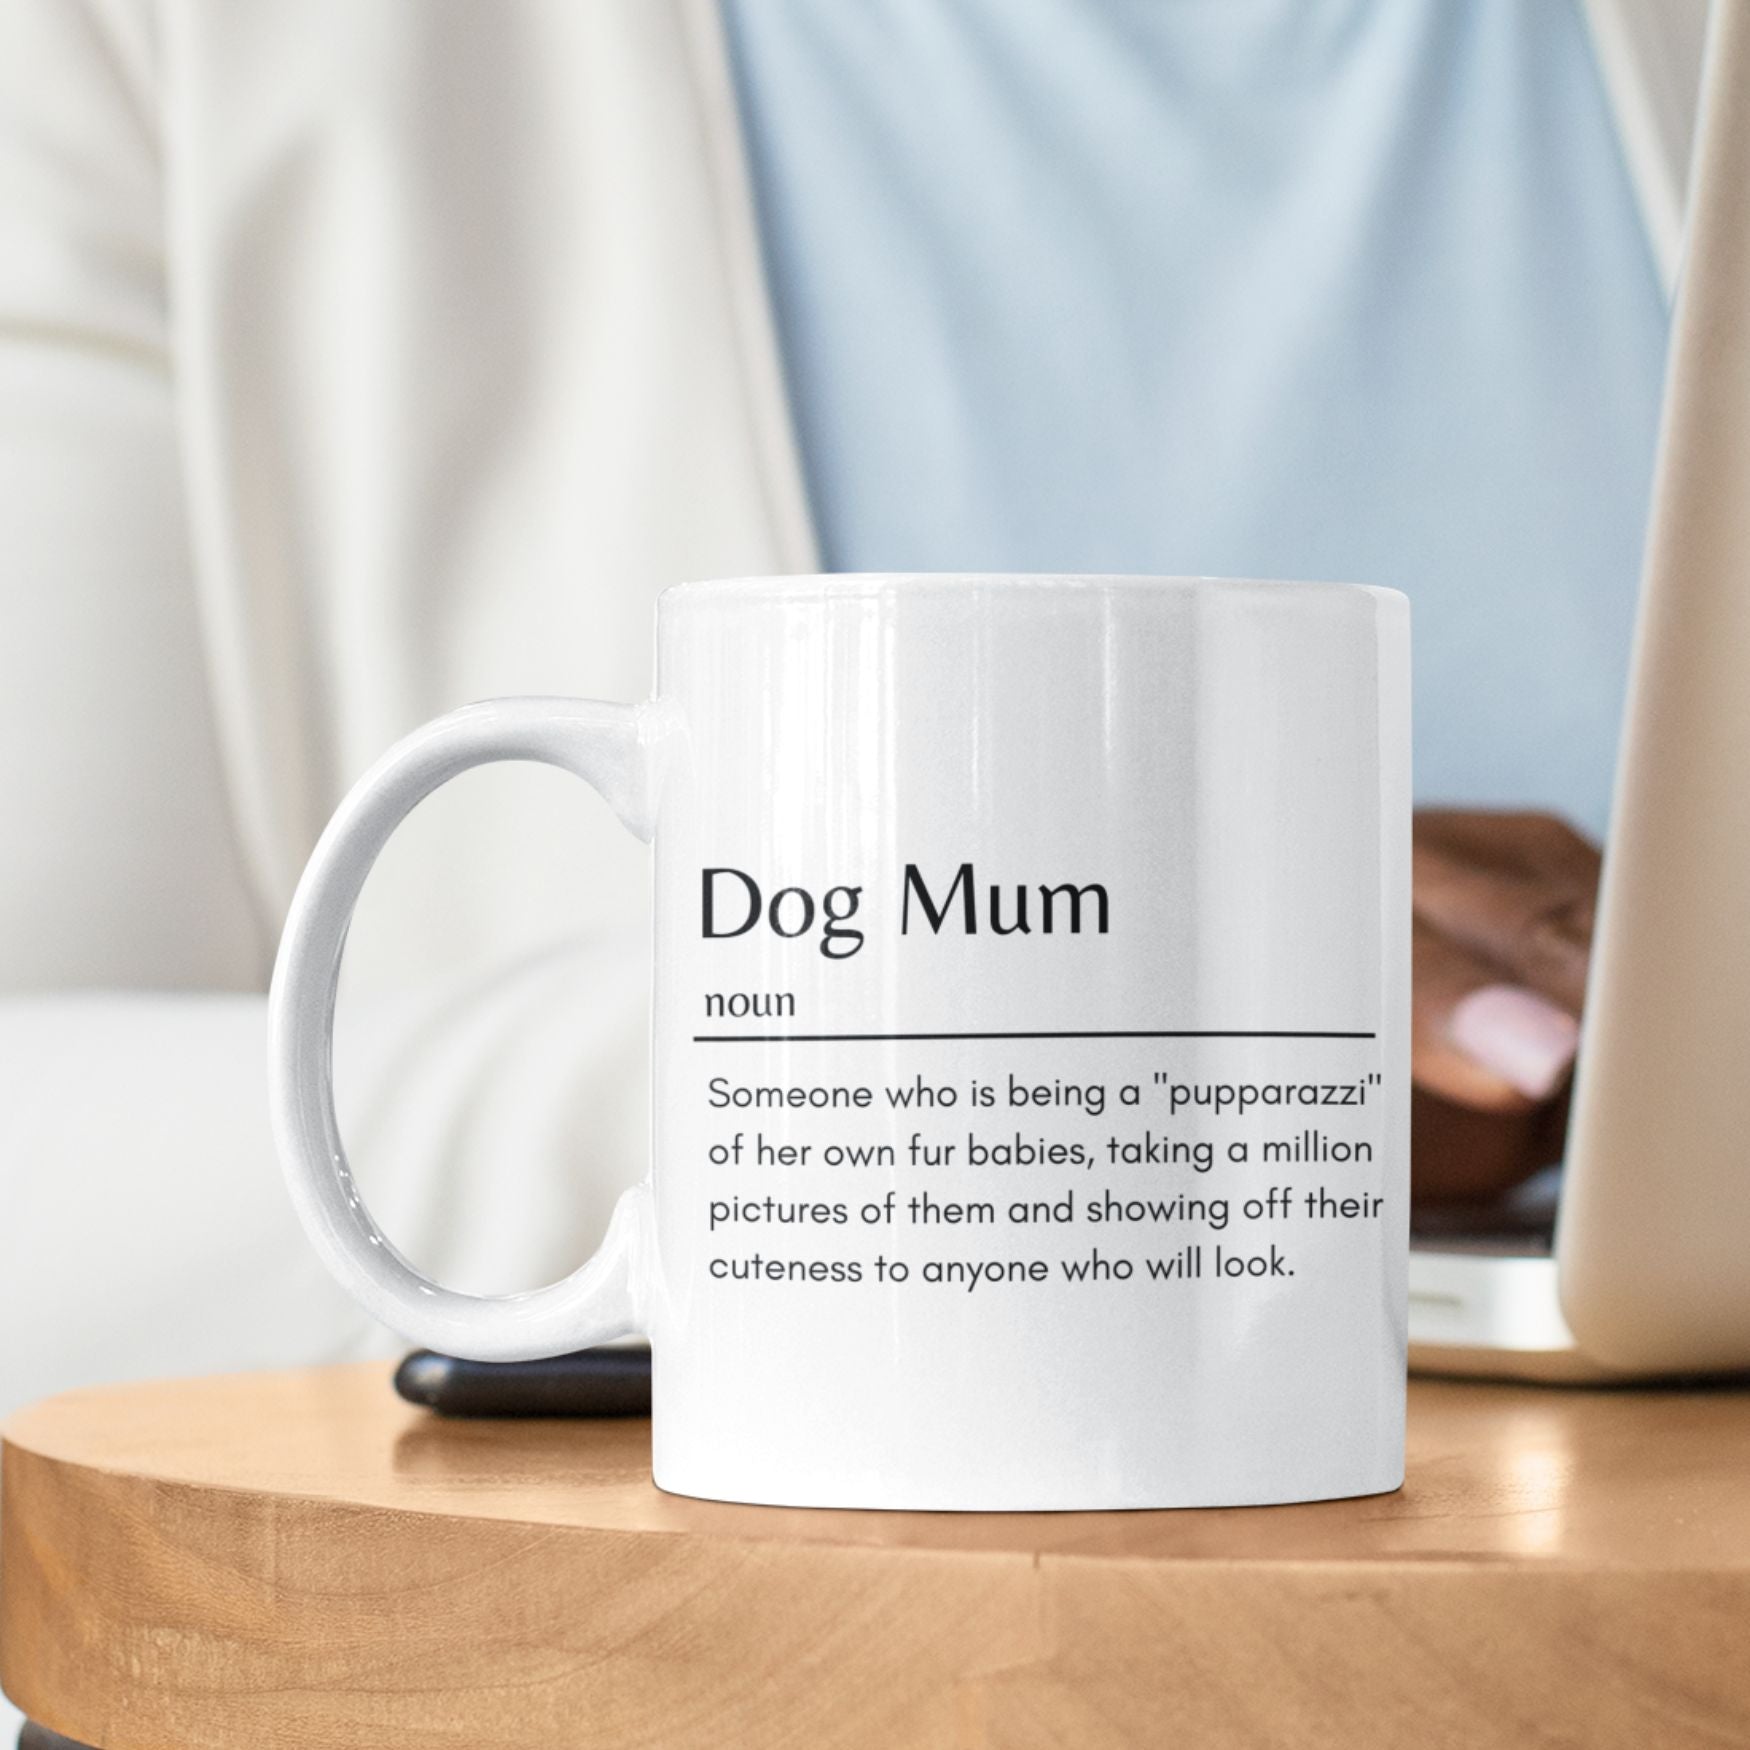 Dog Mum Pupparazzi Definition Mug, Best Mug Gift - Sweetie